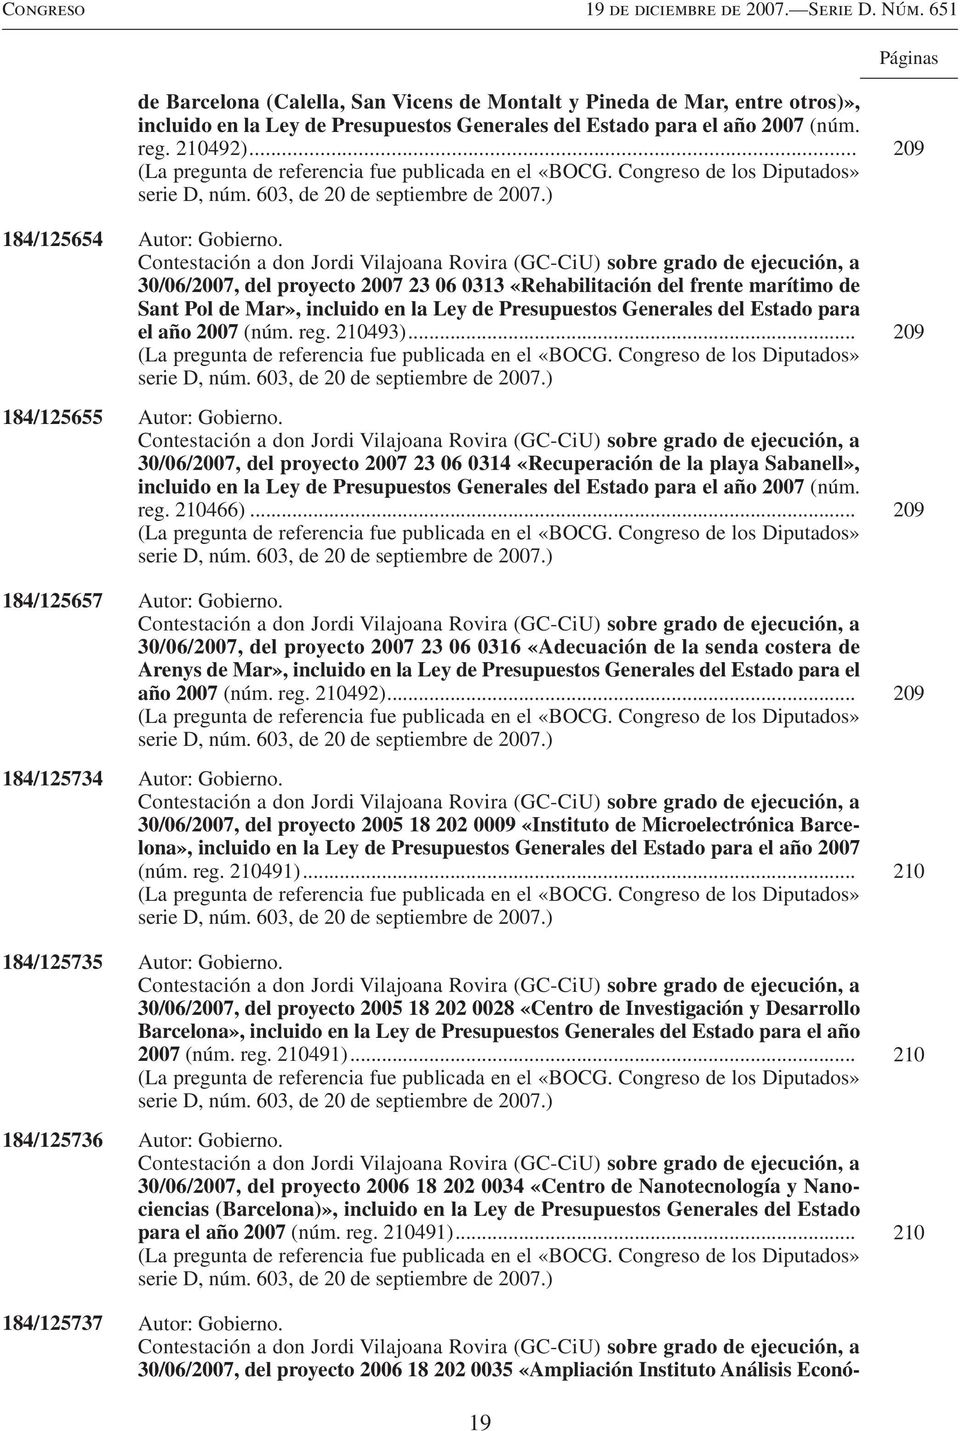 Contestación a don Jordi Vilajoana Rovira (GC-CiU) sobre grado de ejecución, a 30/06/2007, del proyecto 2007 23 06 0313 «Rehabilitación del frente marítimo de Sant Pol de Mar», incluido en la Ley de